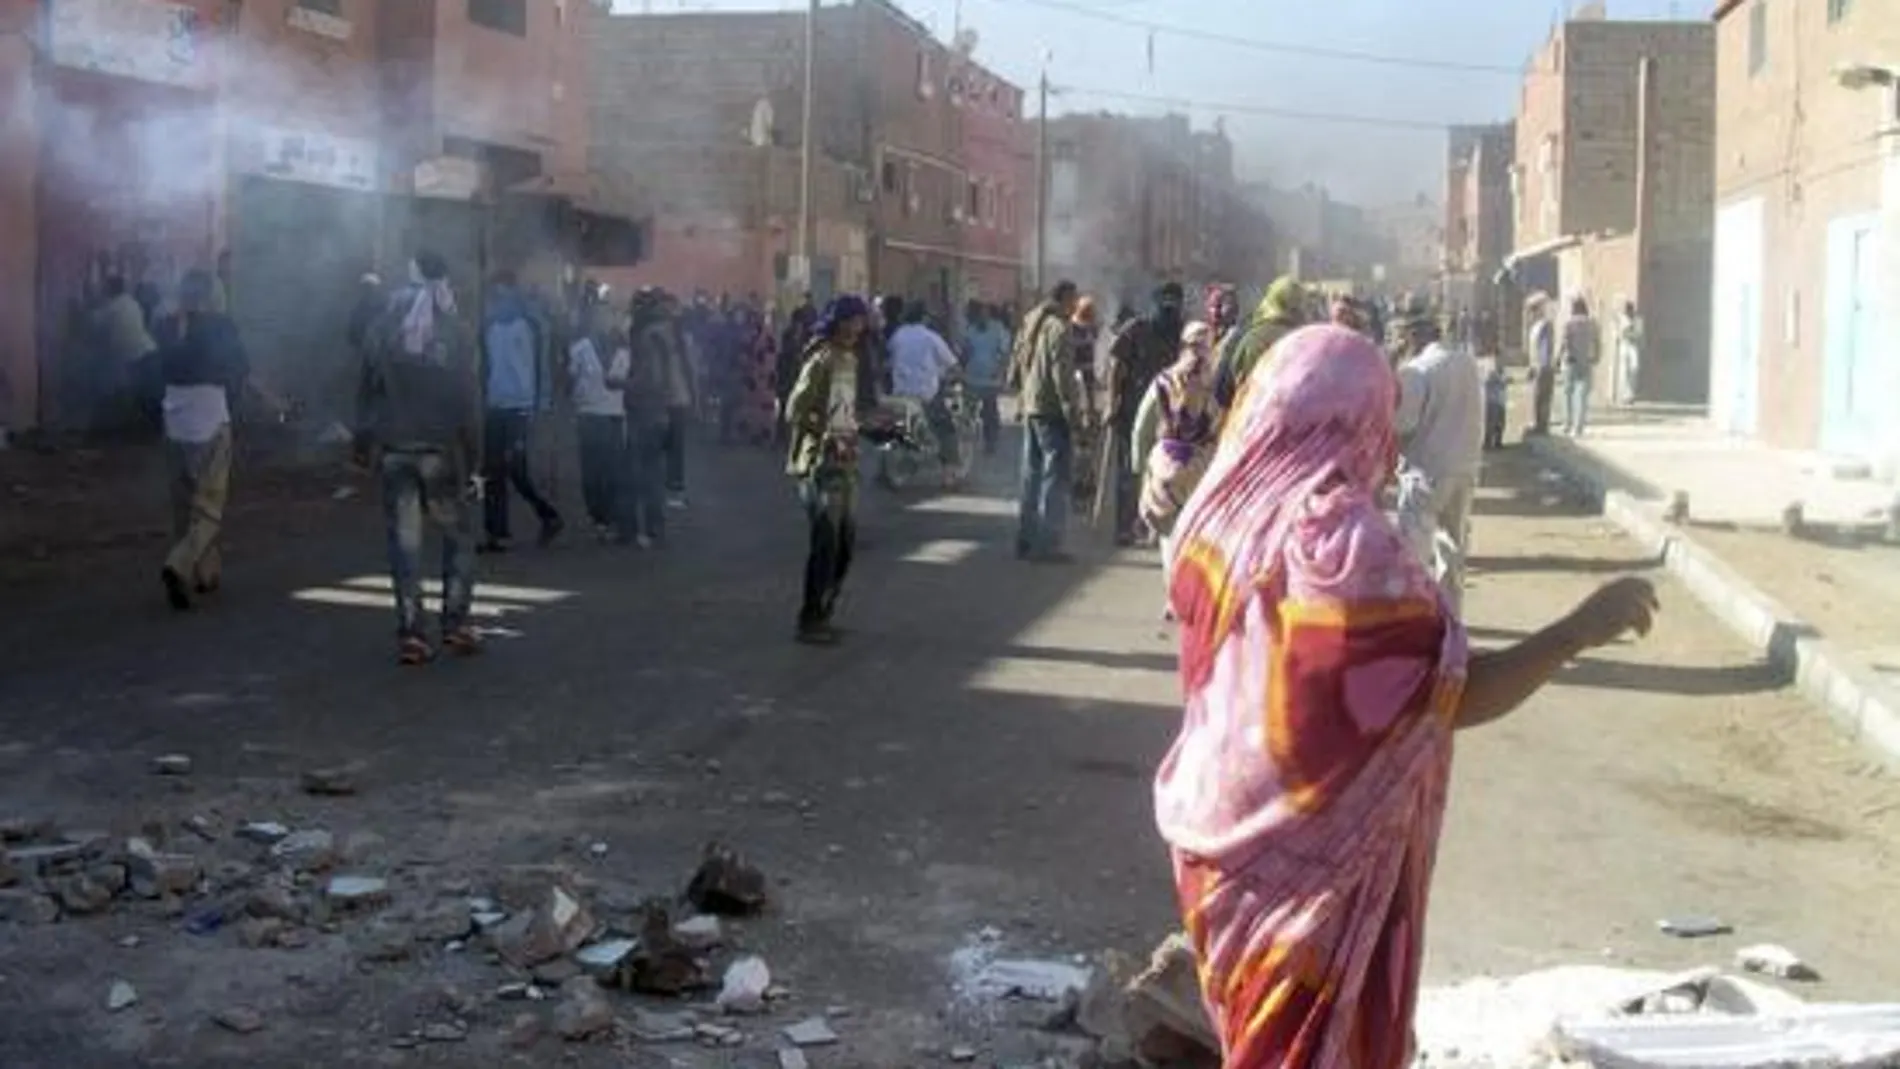 Los disturbios continúan en tres barrios de El Aaiún, según el Polisario